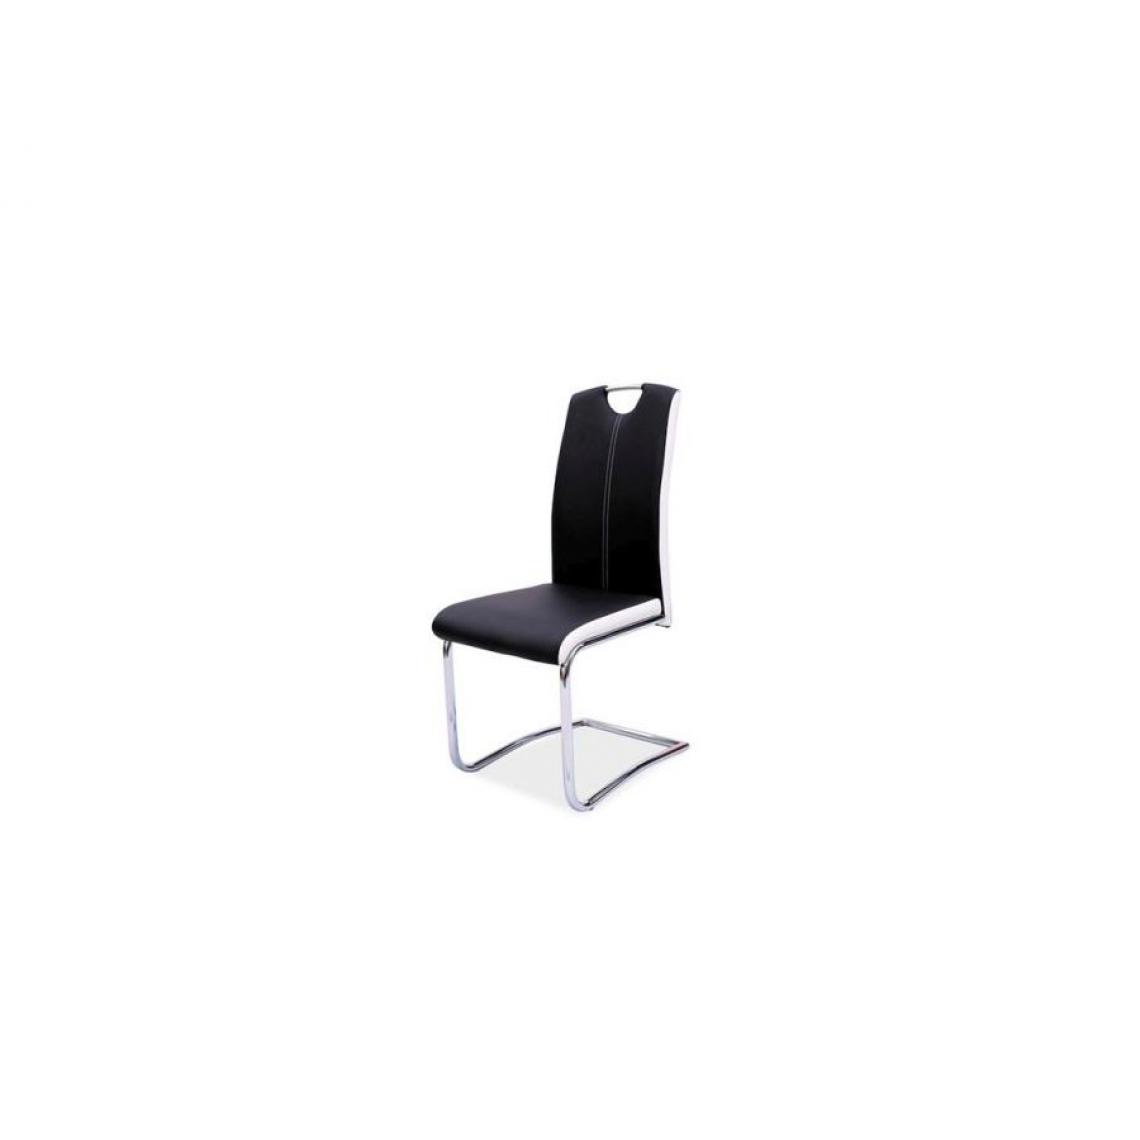 Hucoco - STROVA | Chaise moderne avec base chromée salon/salle à manger | Dimensions : 101x45x44 cm | Rembourrage en cuir écologique - Noir - Chaises